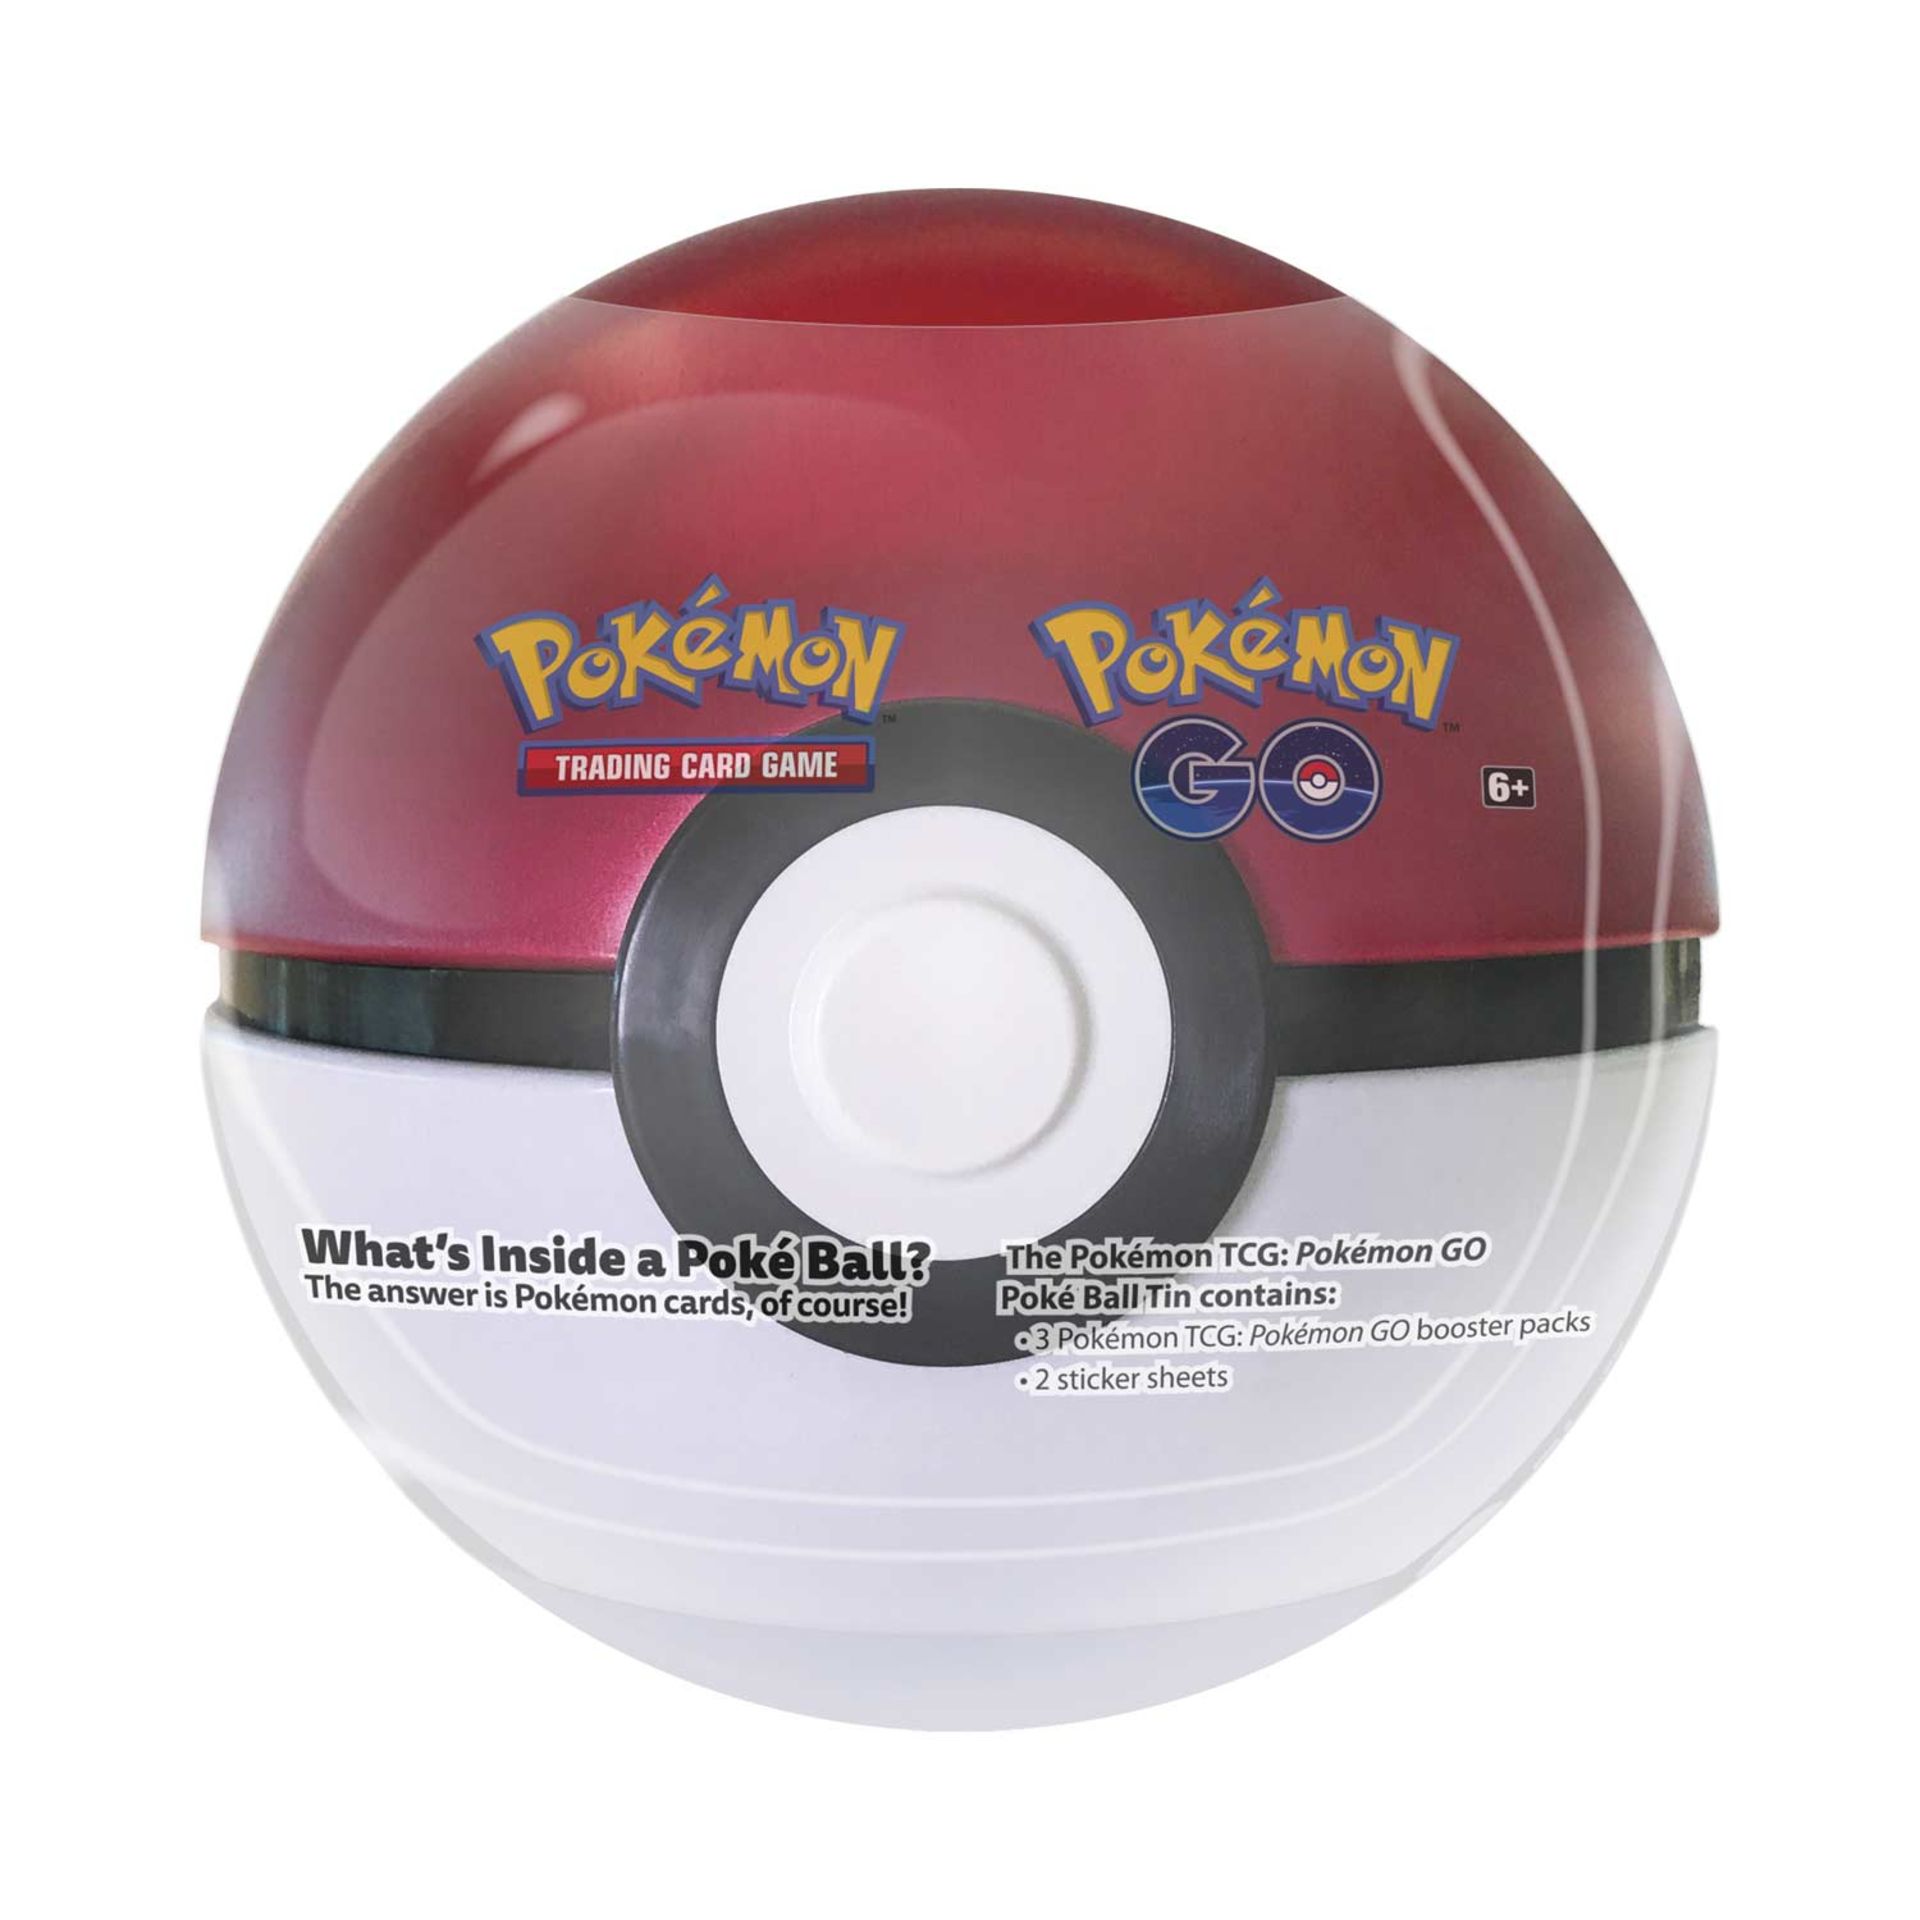 Pokemon TCG: Pokemon GO Poke Ball Tin OO500901 RRP £ 13.99 - Image 2 of 2